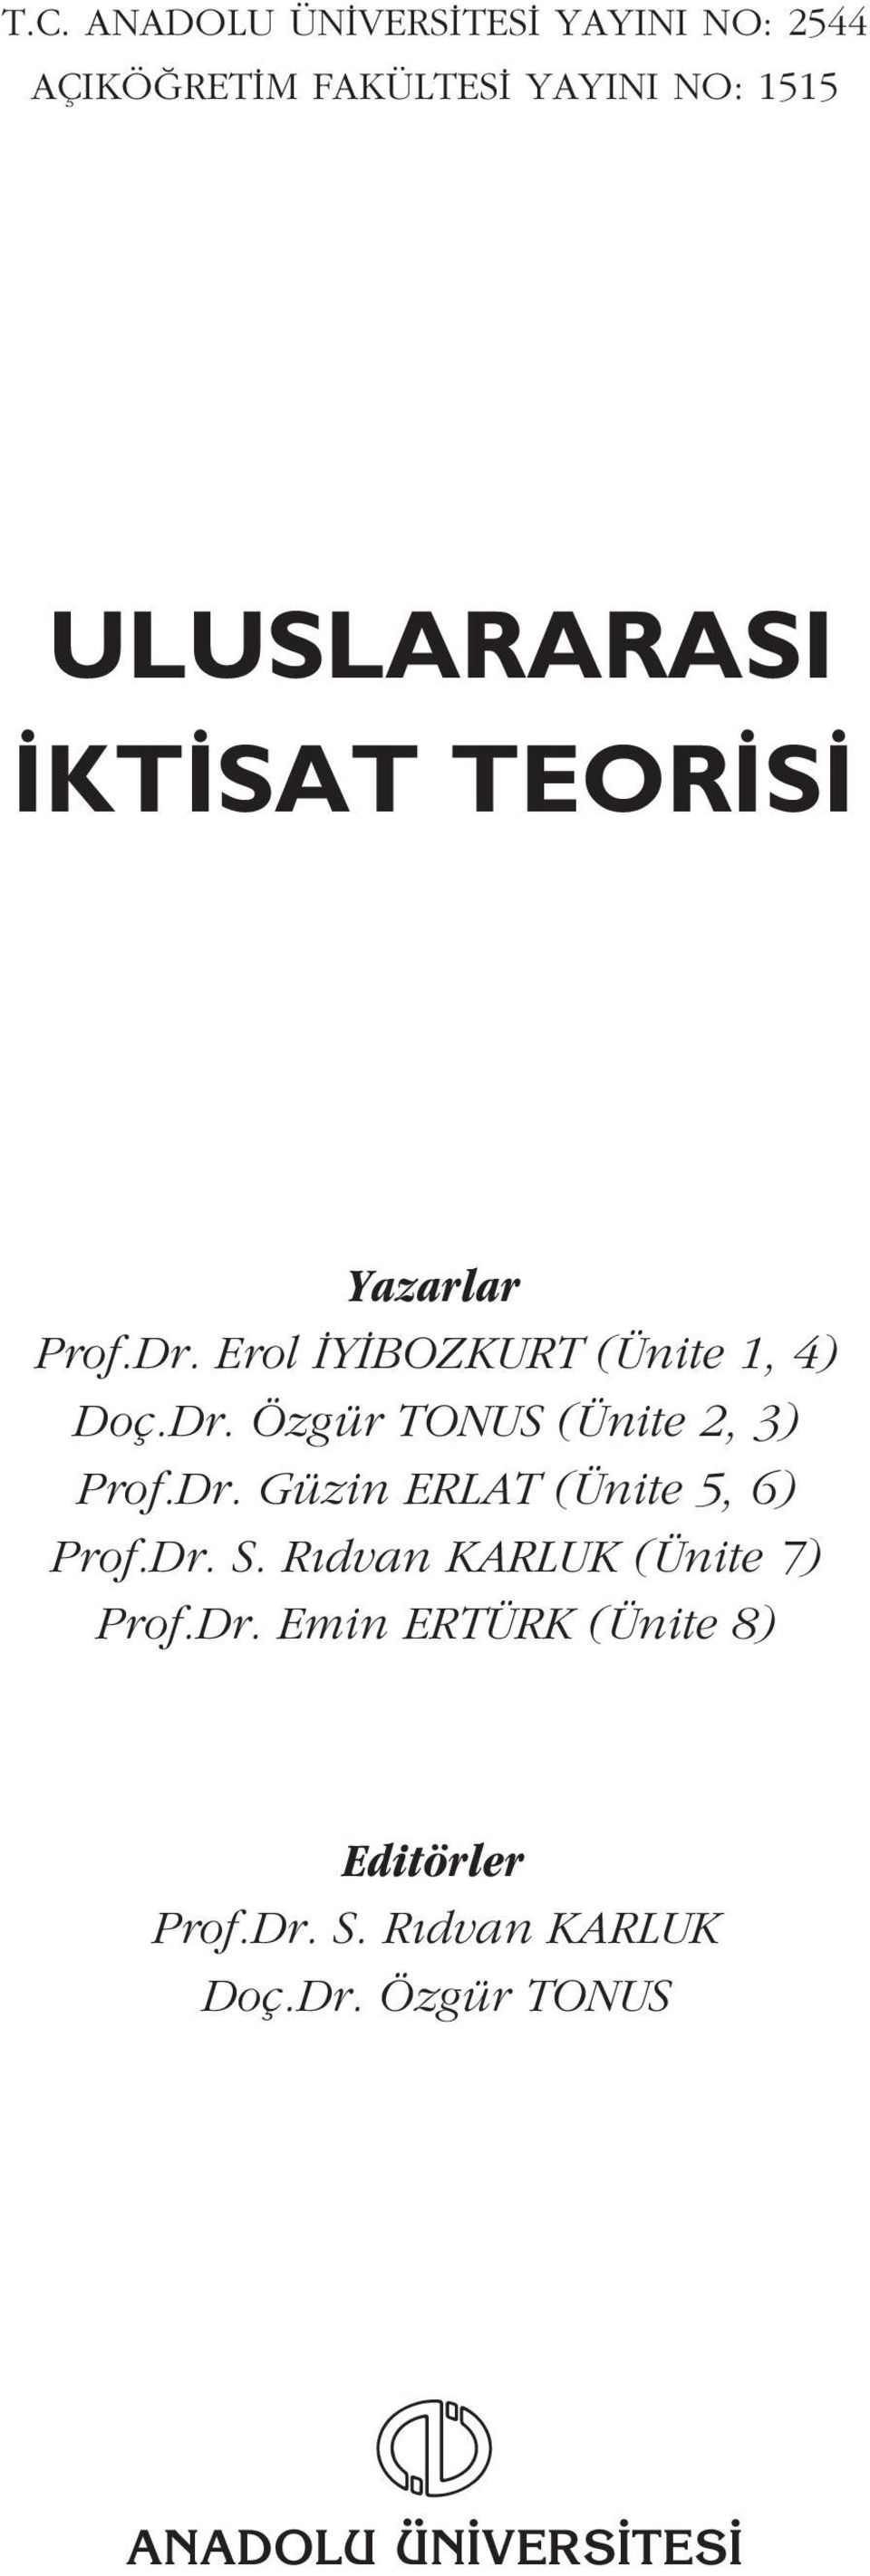 Dr. Güzin ERLAT (Ünite 5, 6) Prof.Dr. S. R dvan KARLUK (Ünite 7) Prof.Dr. Emin ERTÜRK (Ünite 8) Editörler Prof.